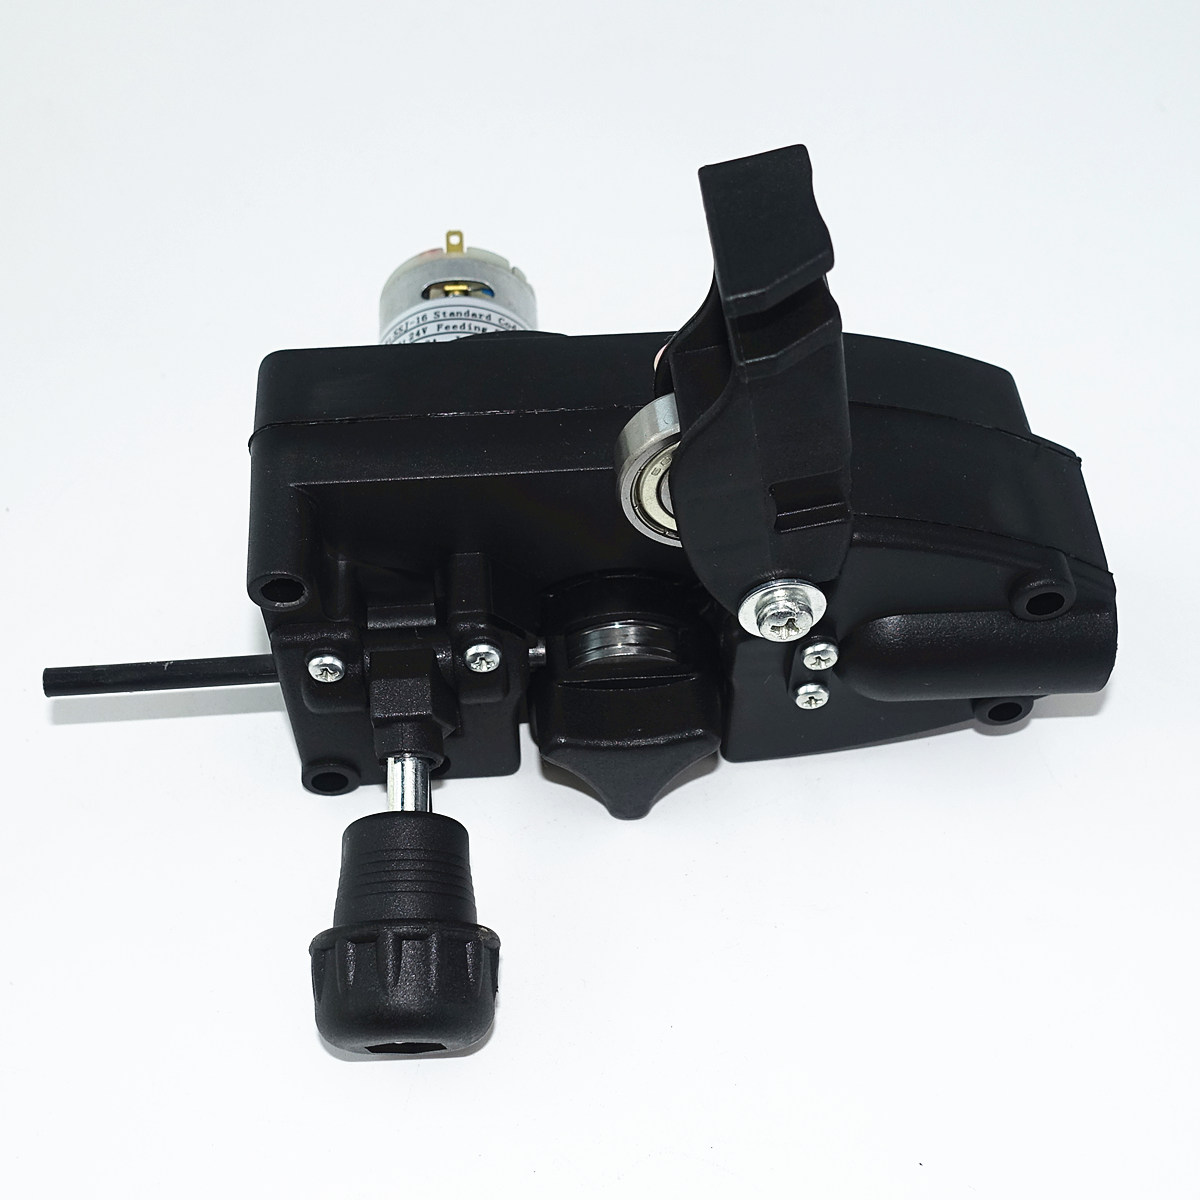 Dc 24v mini-trådføder ssj -16 mig / mag svejsemaskine trådfremføringsenhed